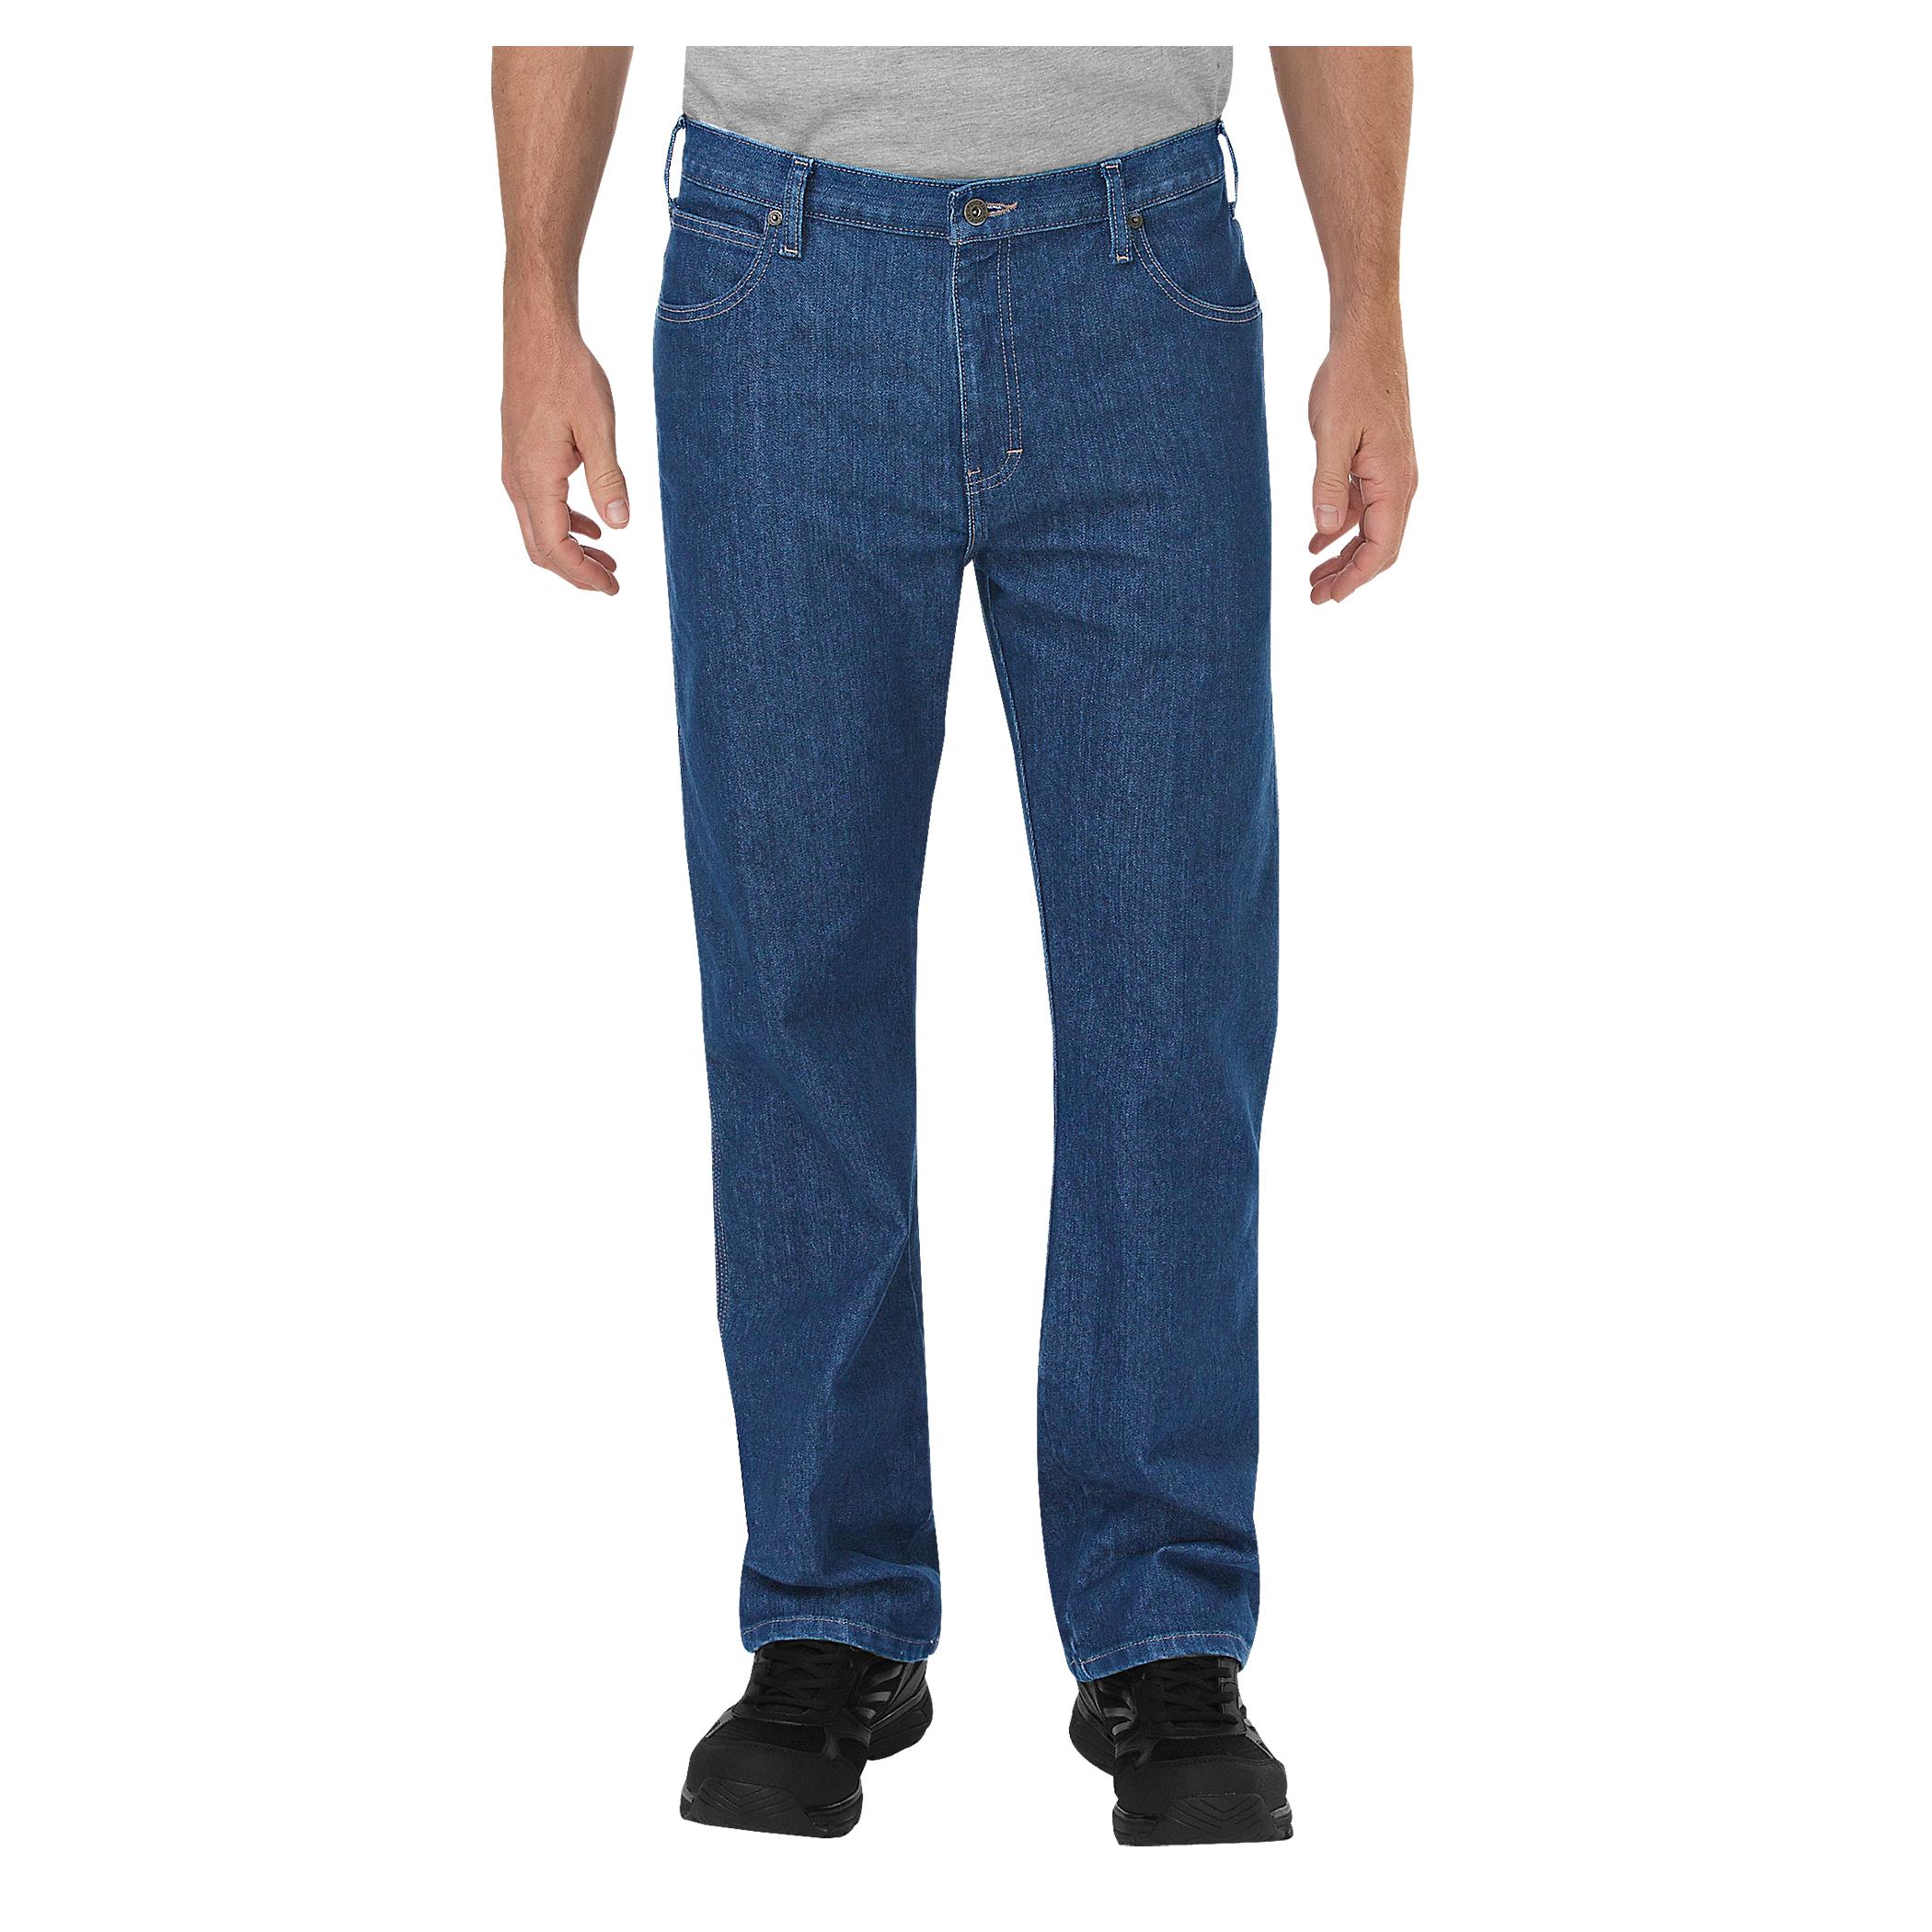 Best Selling Men's Jeans | ShopYourWay